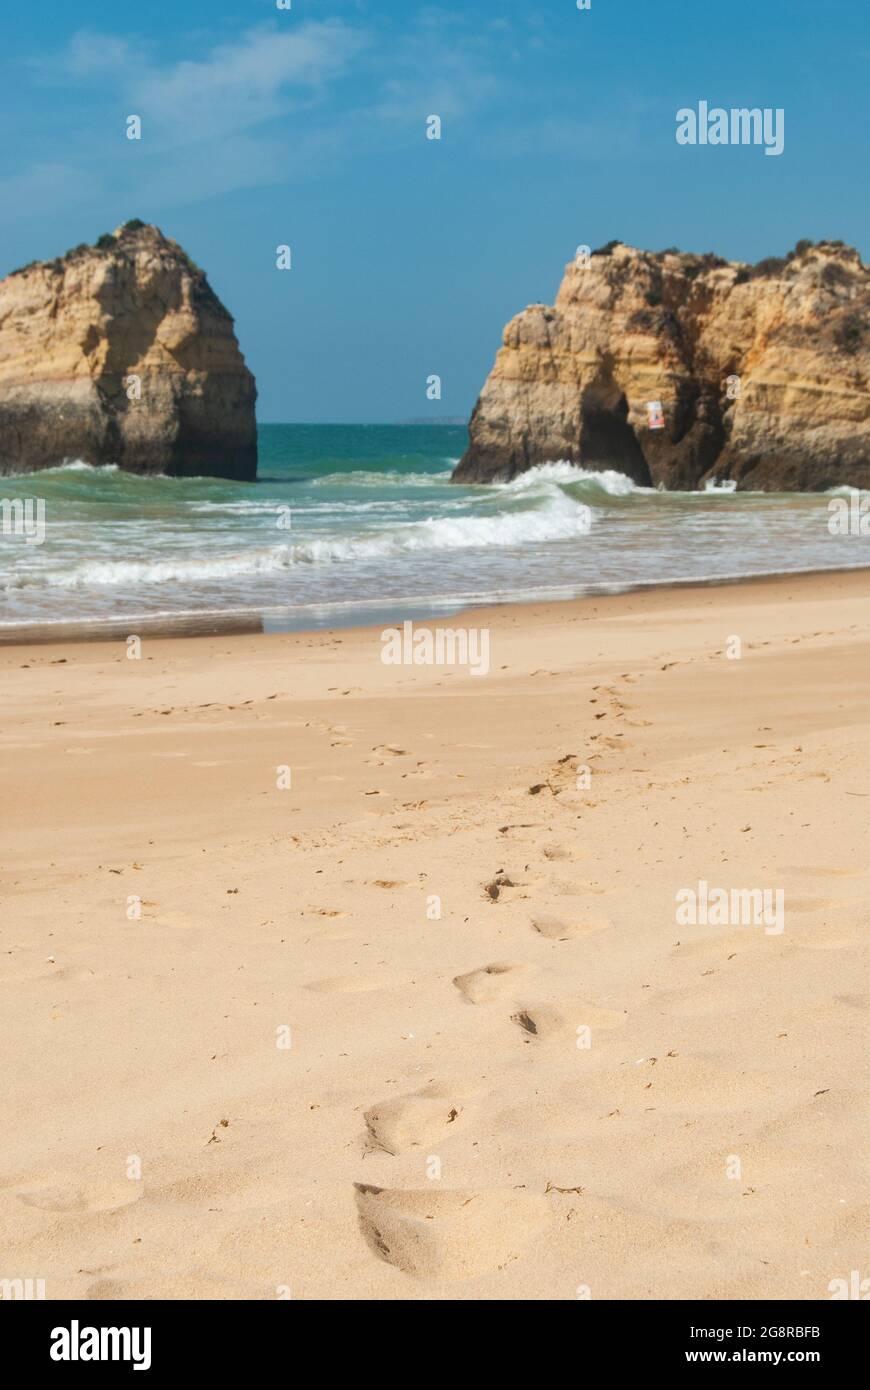 Nahaufnahme der Fußabdrücke im Sand eines leeren Strandes, Klippen im Ozean im Hintergrund, blauer Himmel - selektiver Fokus, Platz für Text Stockfoto